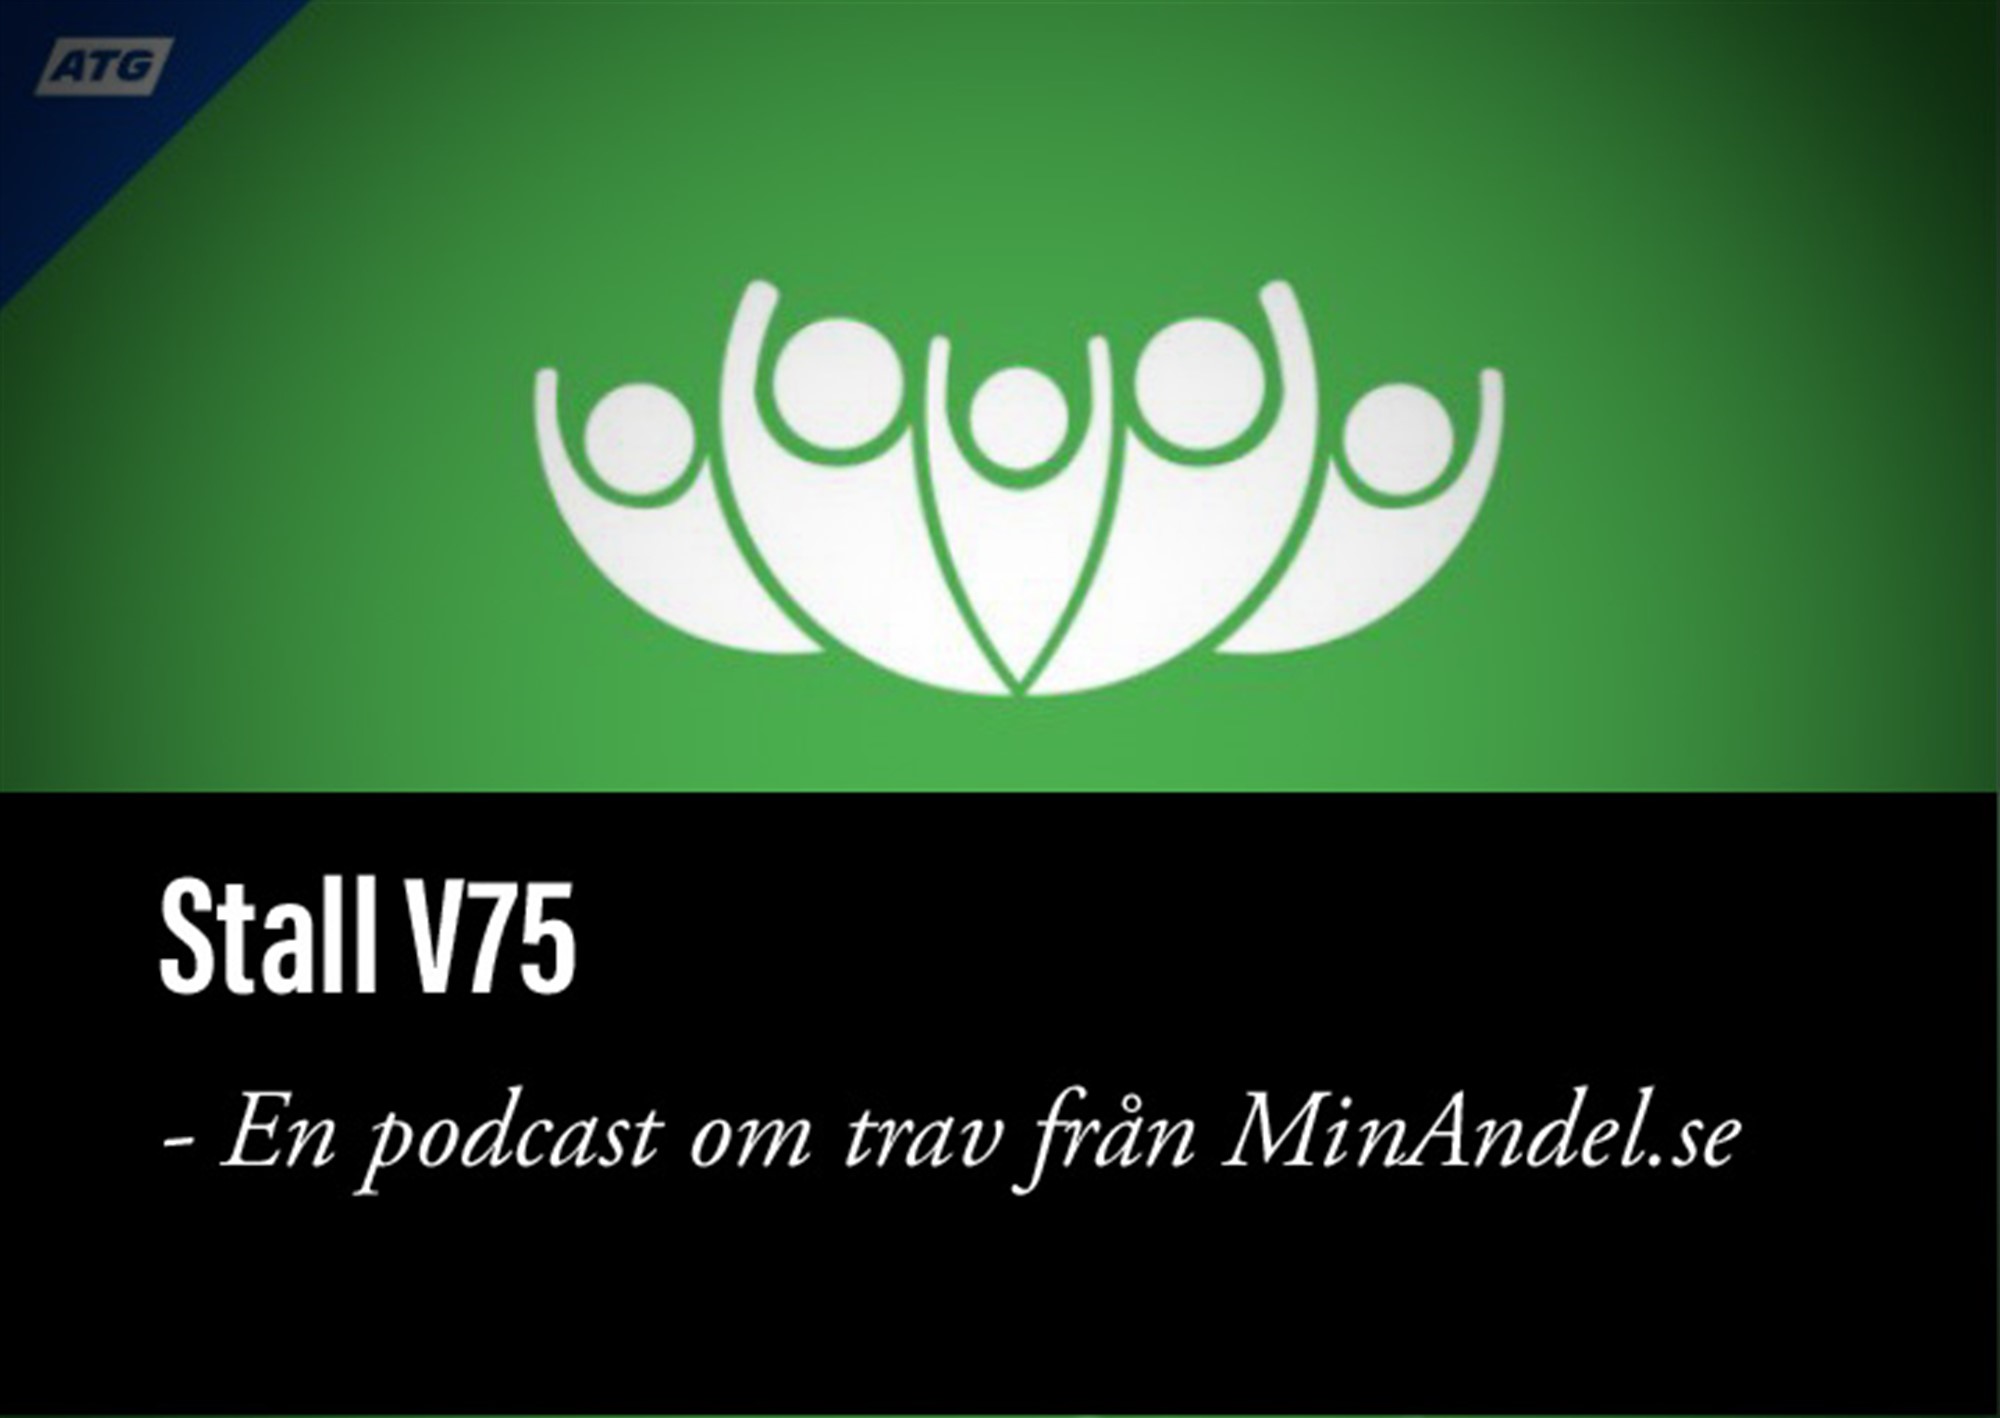 V75 Eskilstuna 11/11. Presenteras av MinAndel.se